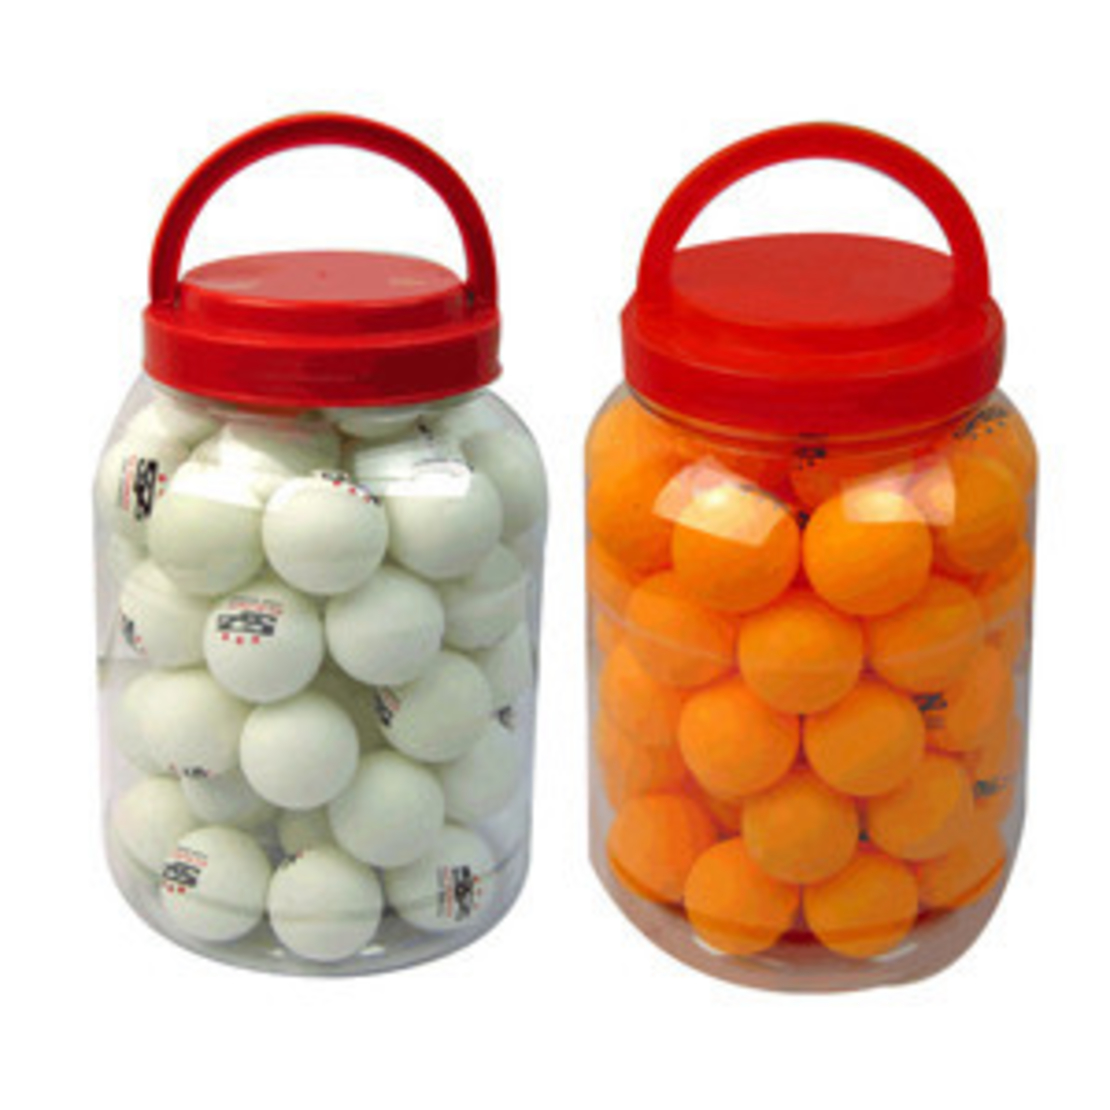 bucket 60 ping pong balls